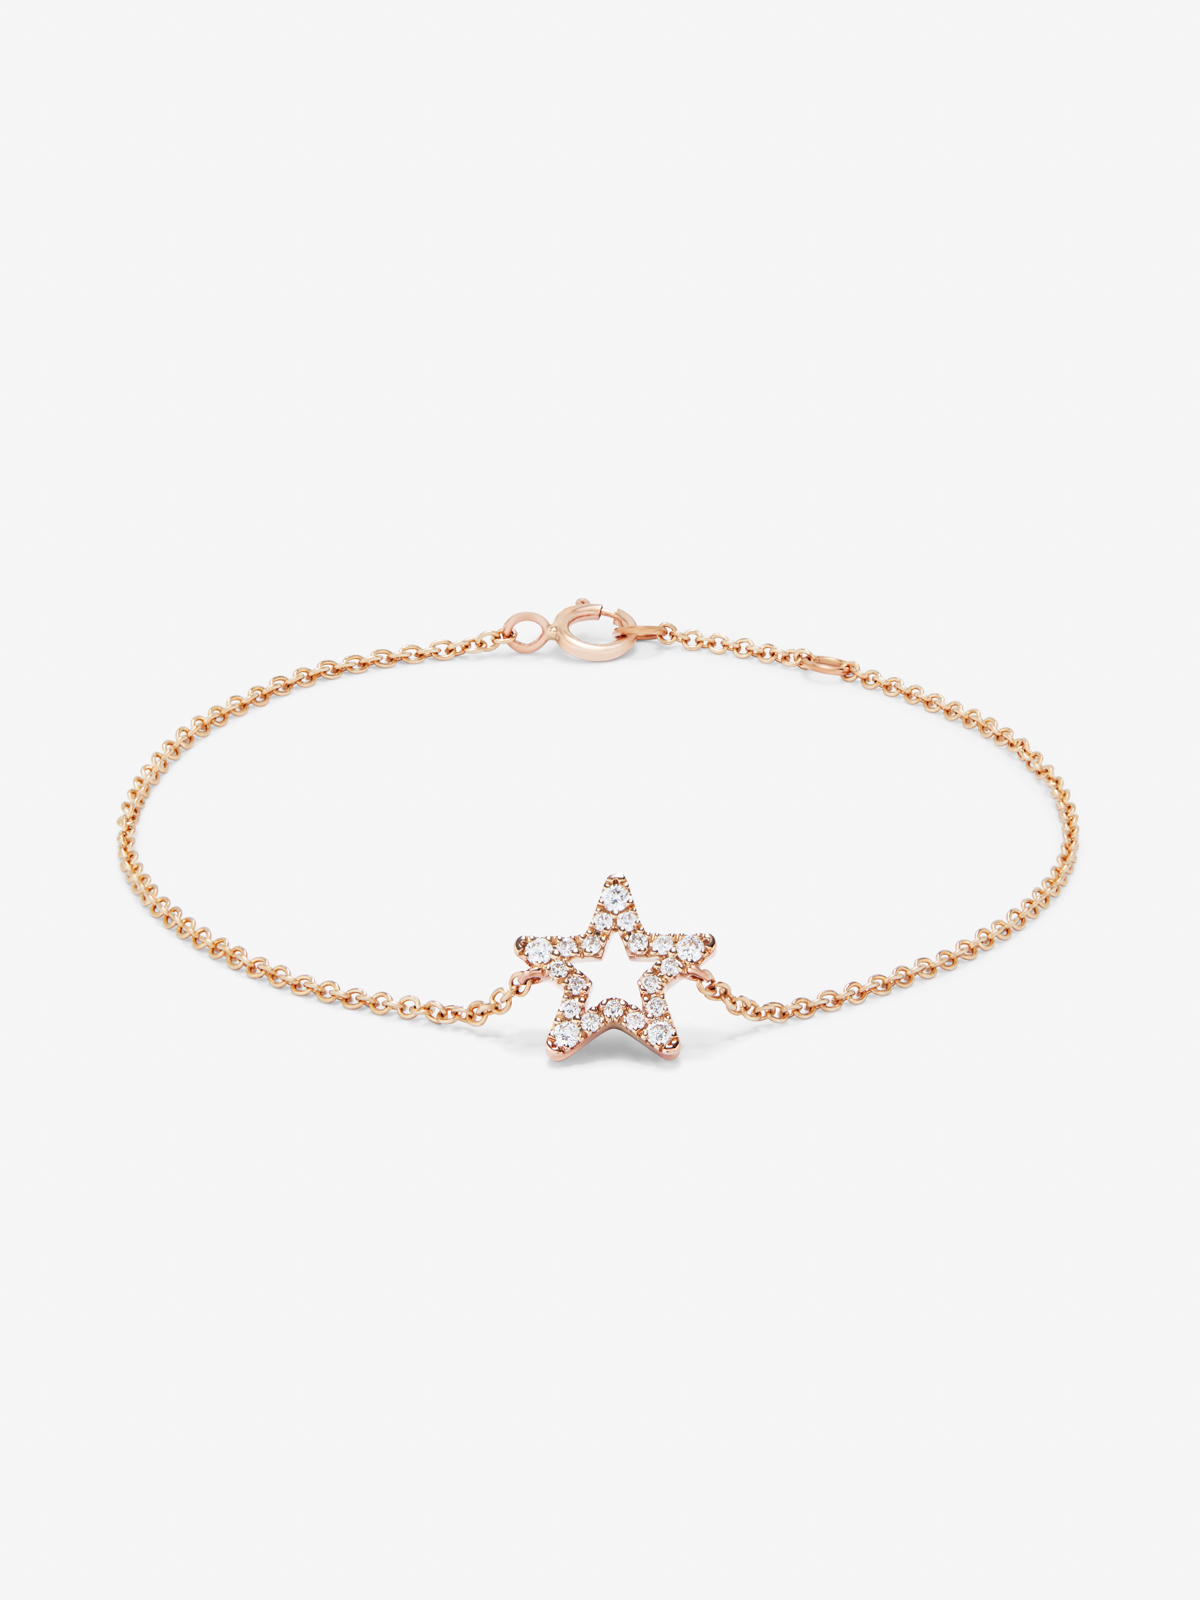 18K pink gold star bracelet with diamonds